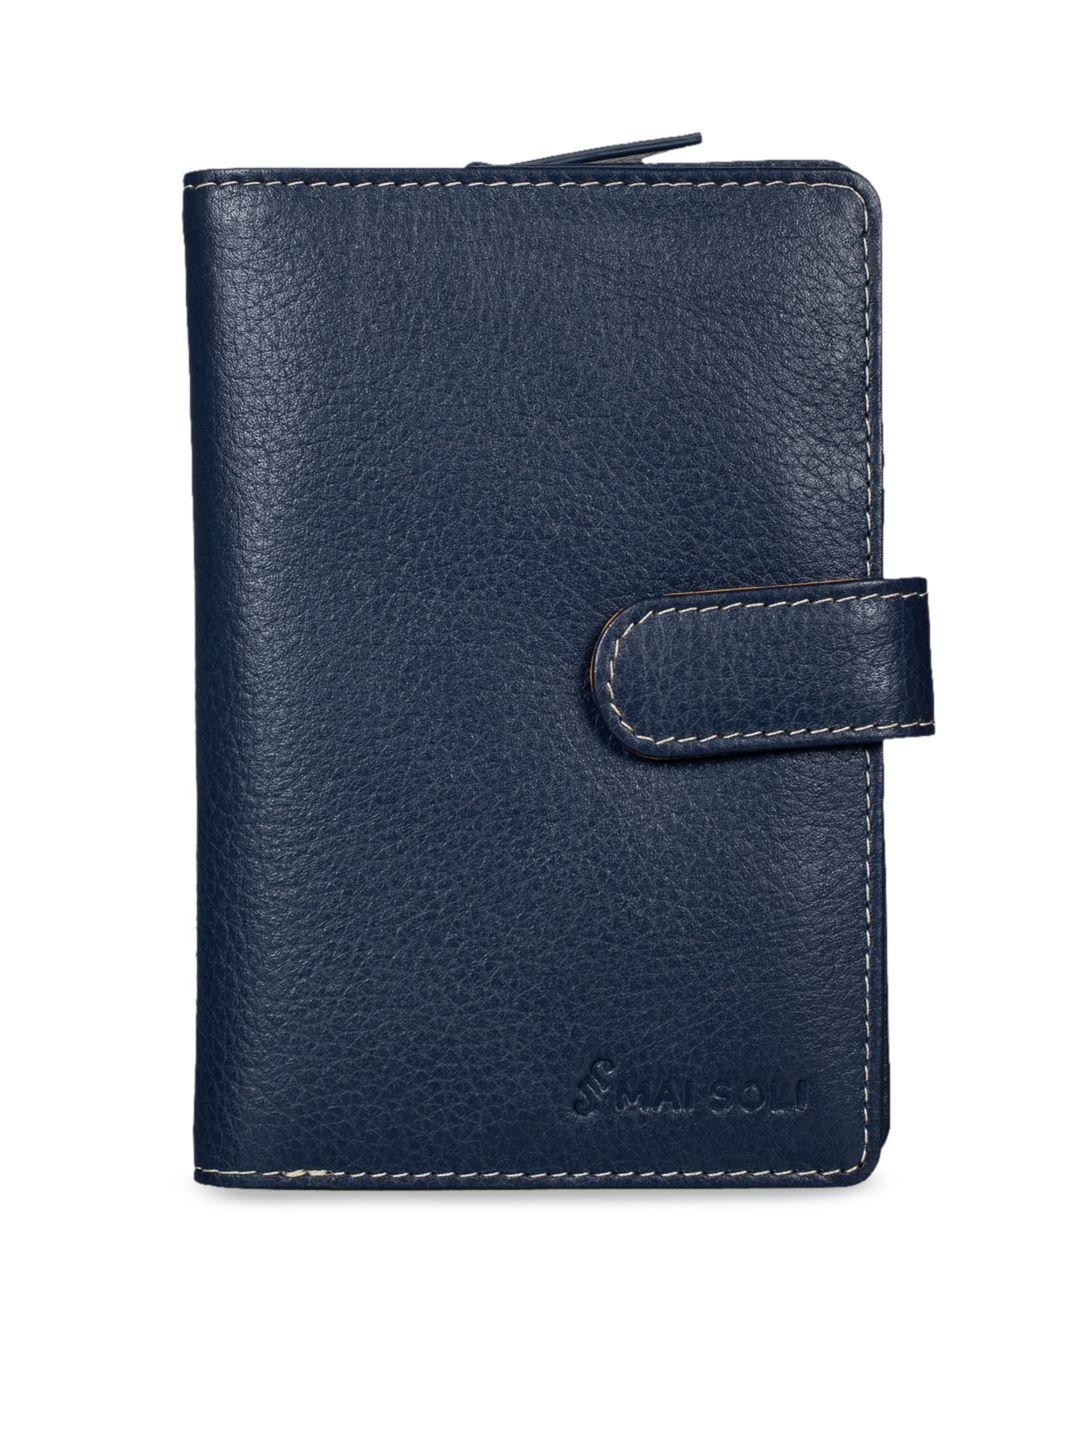 mai soli women blue solid two fold wallet